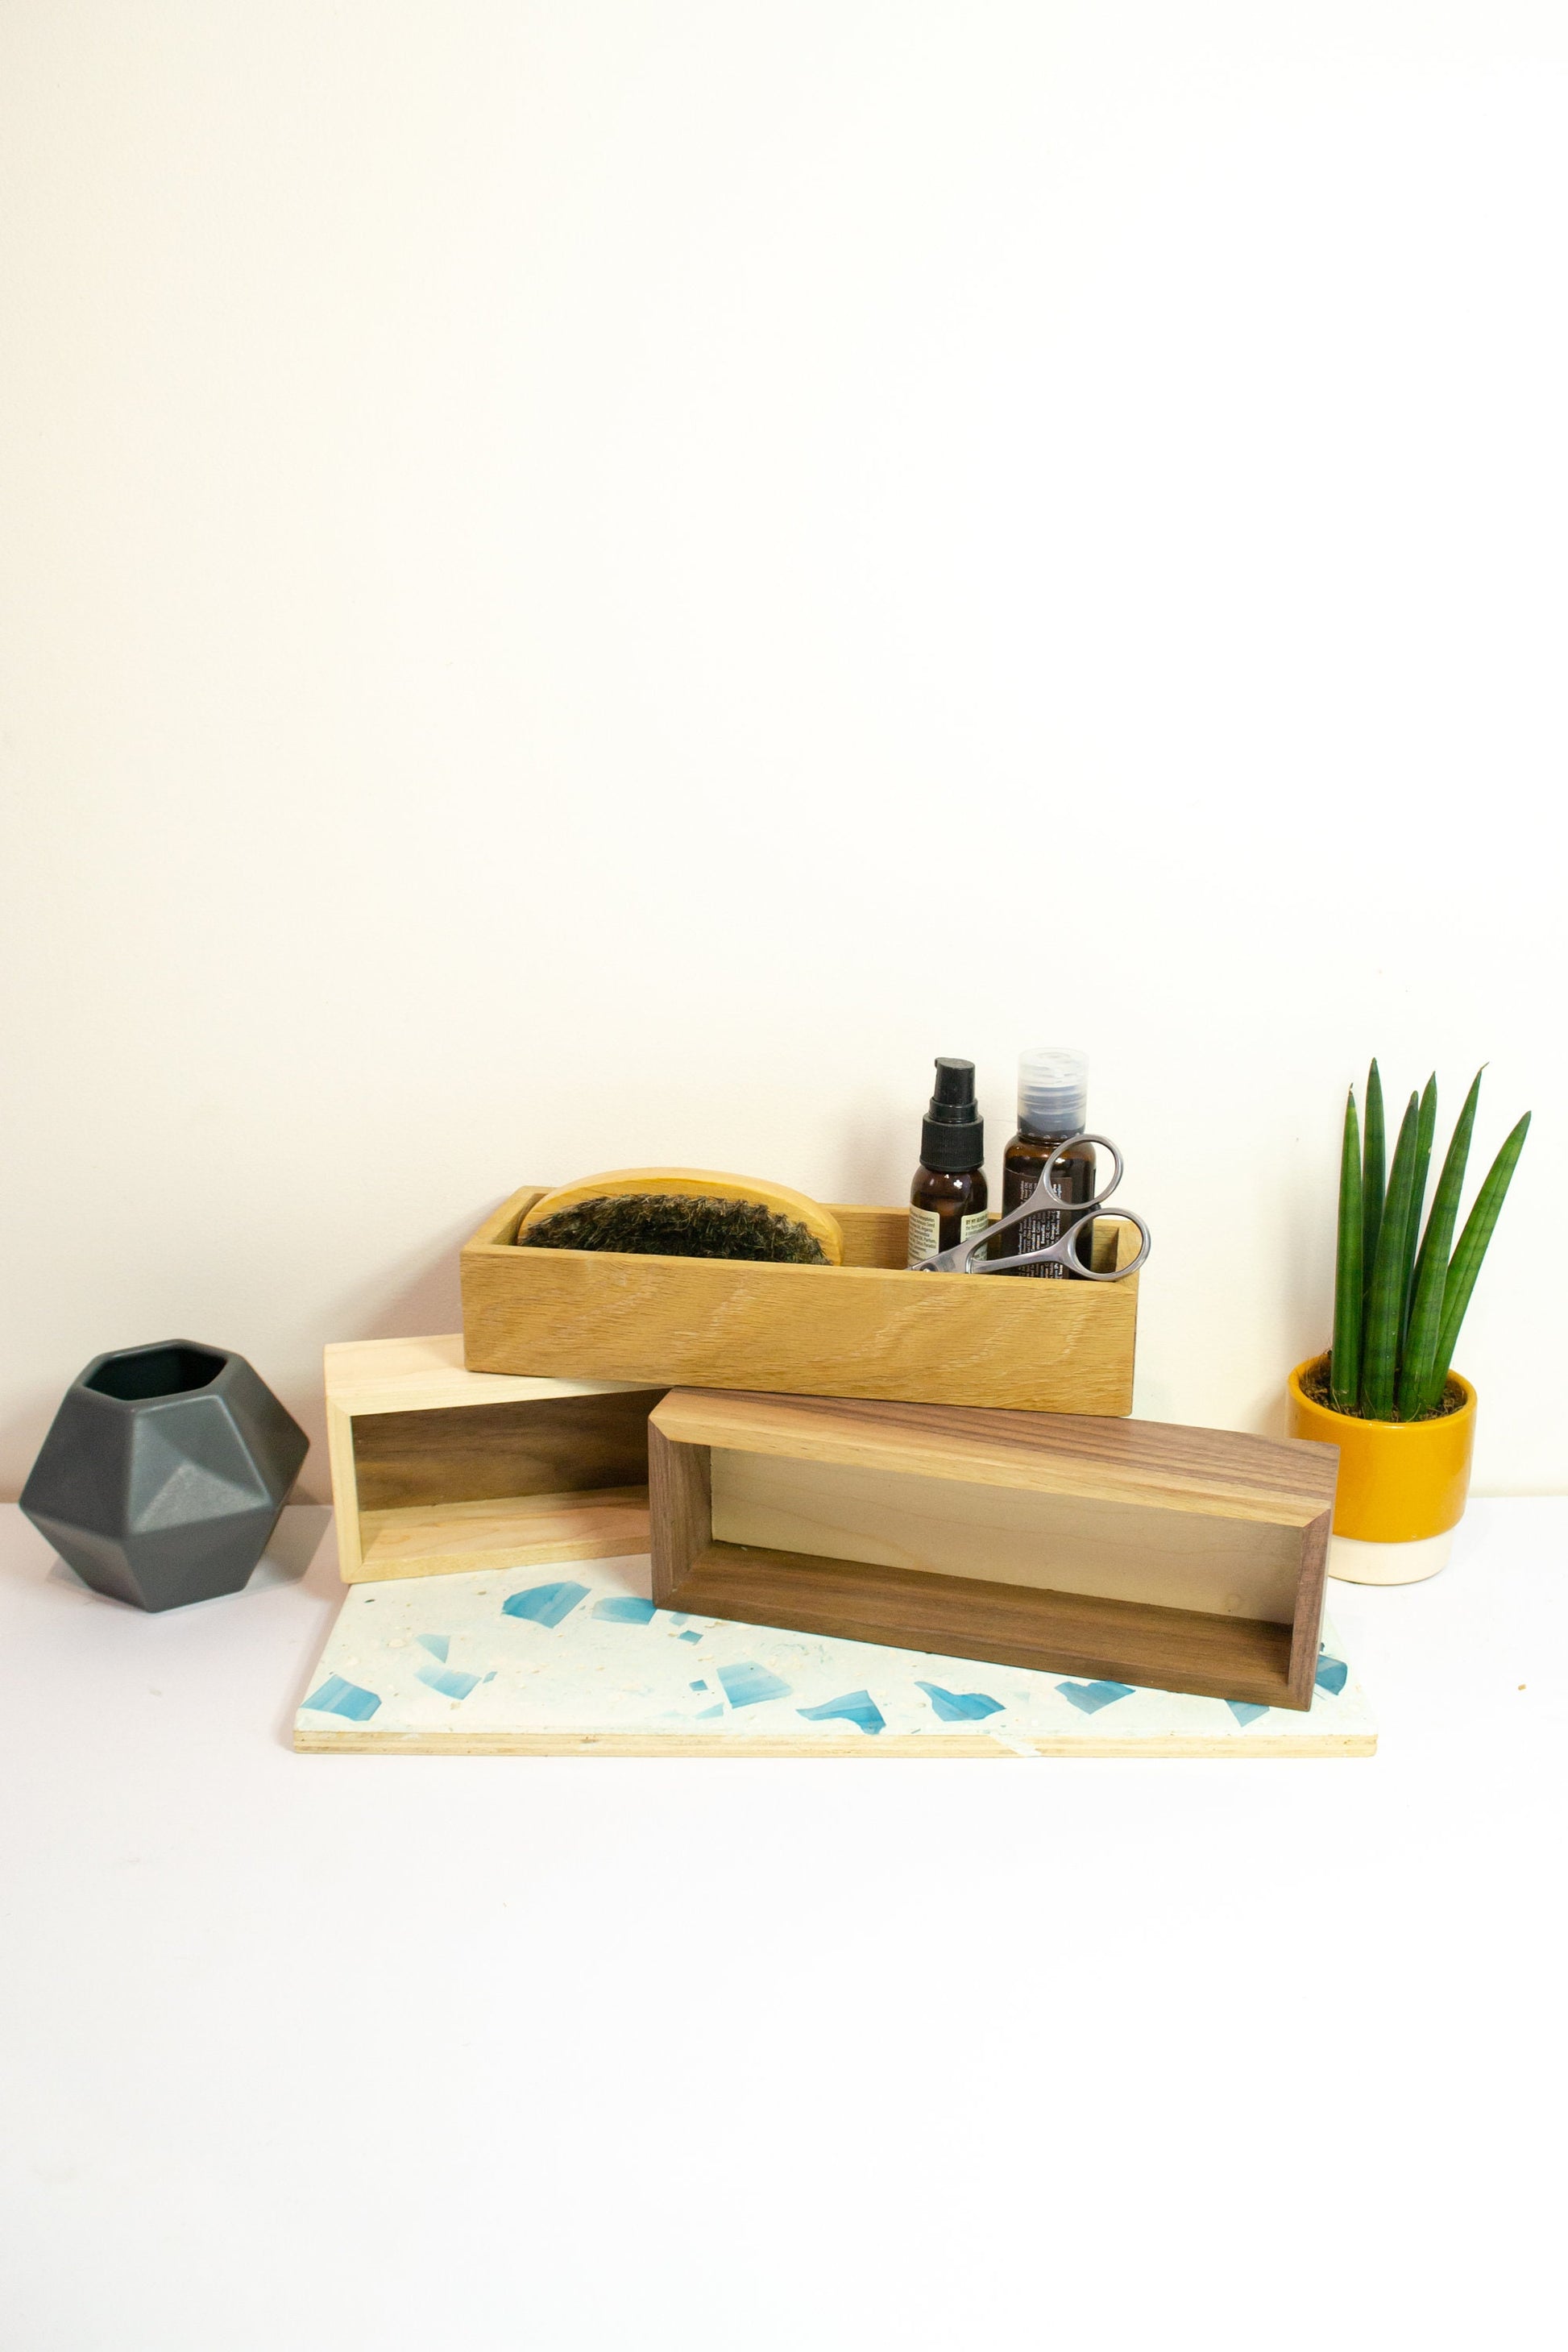 Handmade Birch valet tray, coin dish catchall tray, desk tidy wooden box Marie Kondo storage tray, stash tray, office desk box